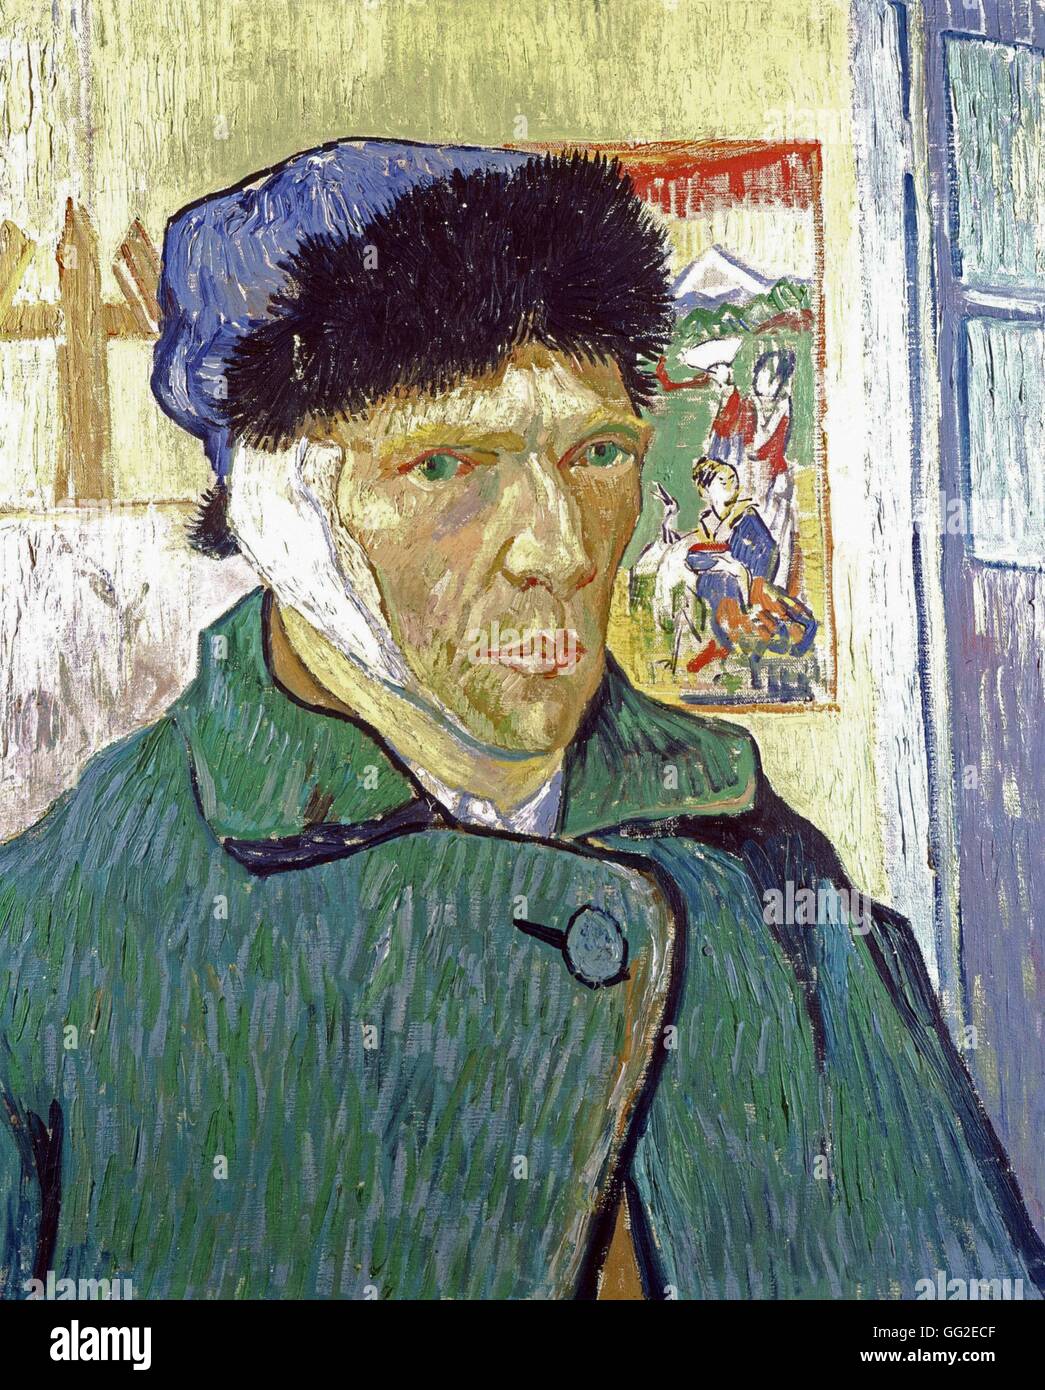 Vincent Van Gogh escuela holandesa Autorretrato Con la oreja vendada 1889 Óleo sobre lienzo (50 x 60,5 cm) de Londres, el Instituto Courtauld, Foto de stock